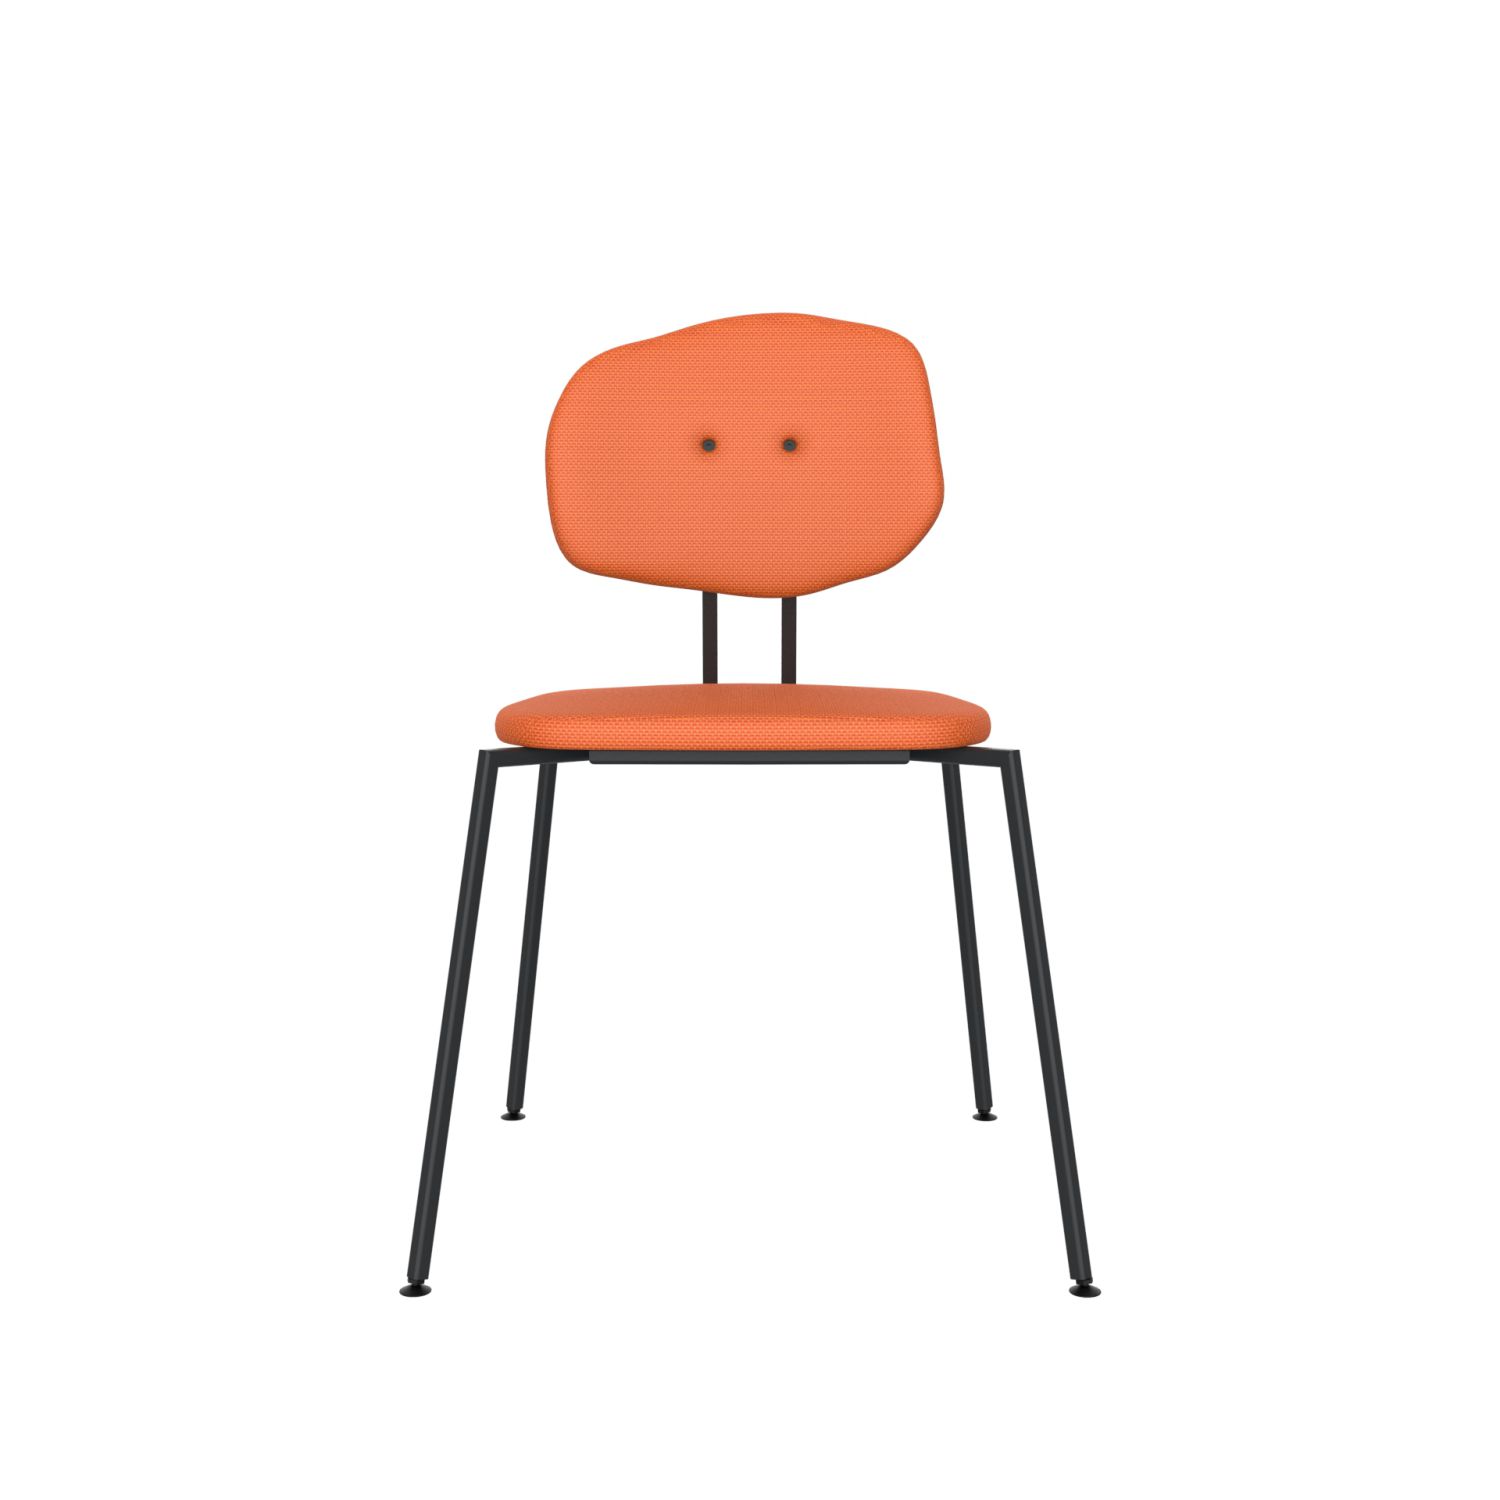 lensvelt maarten baas chair 141 stackable without armrests backrest e burn orange 102 black ral9005 hard leg ends